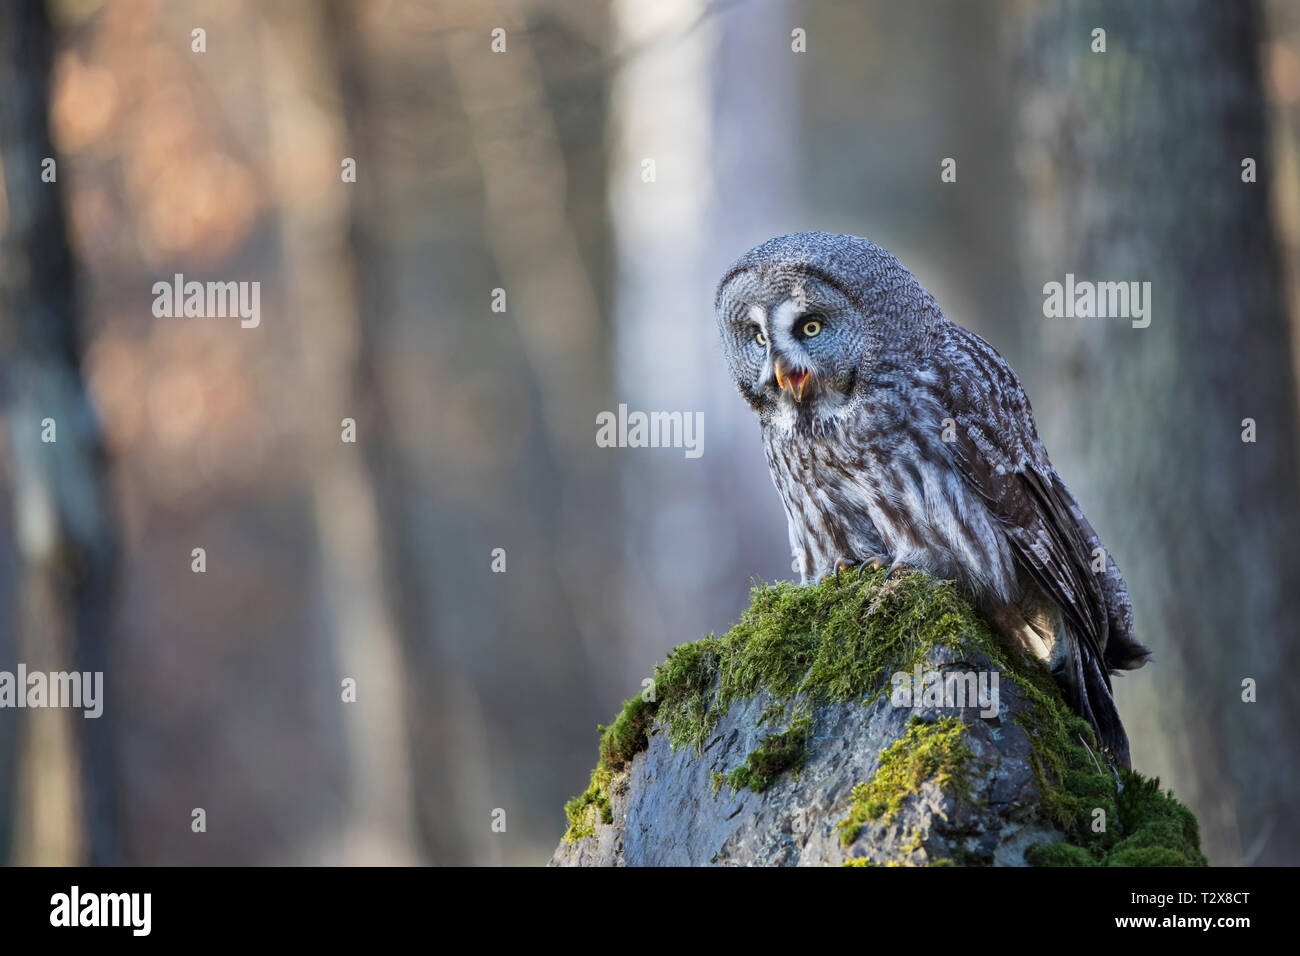 Bartkauz, Strix nebulosa, great grey owl Stock Photo